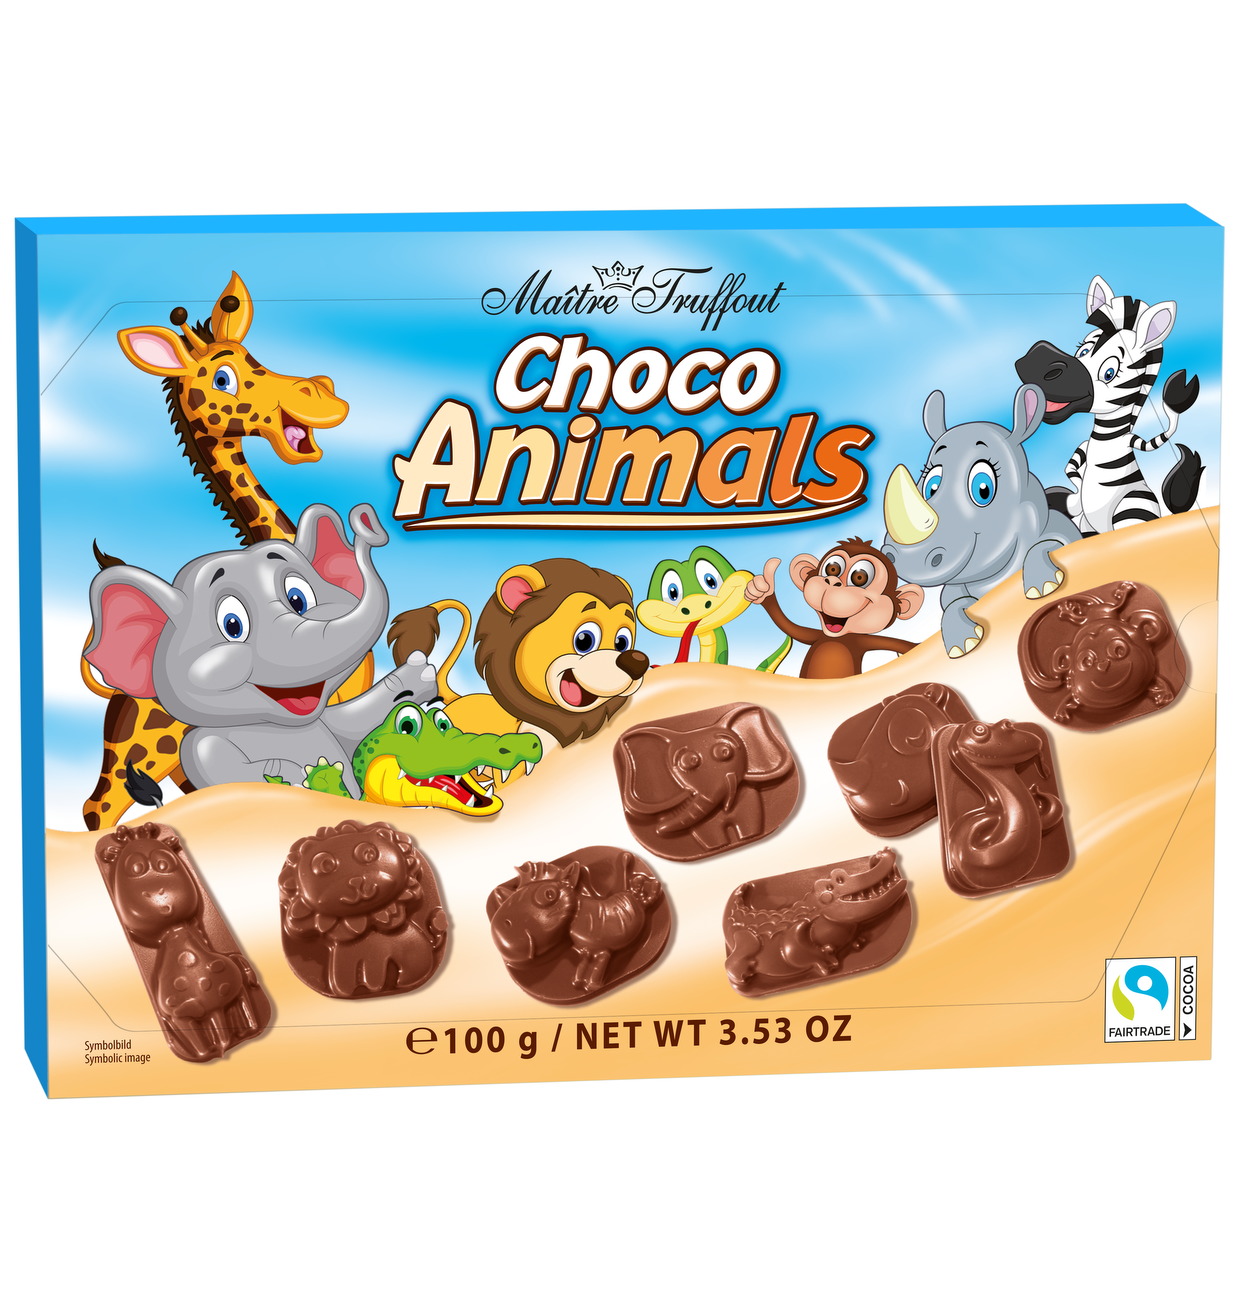 Milk chocolate choco animals (22 x 100g)